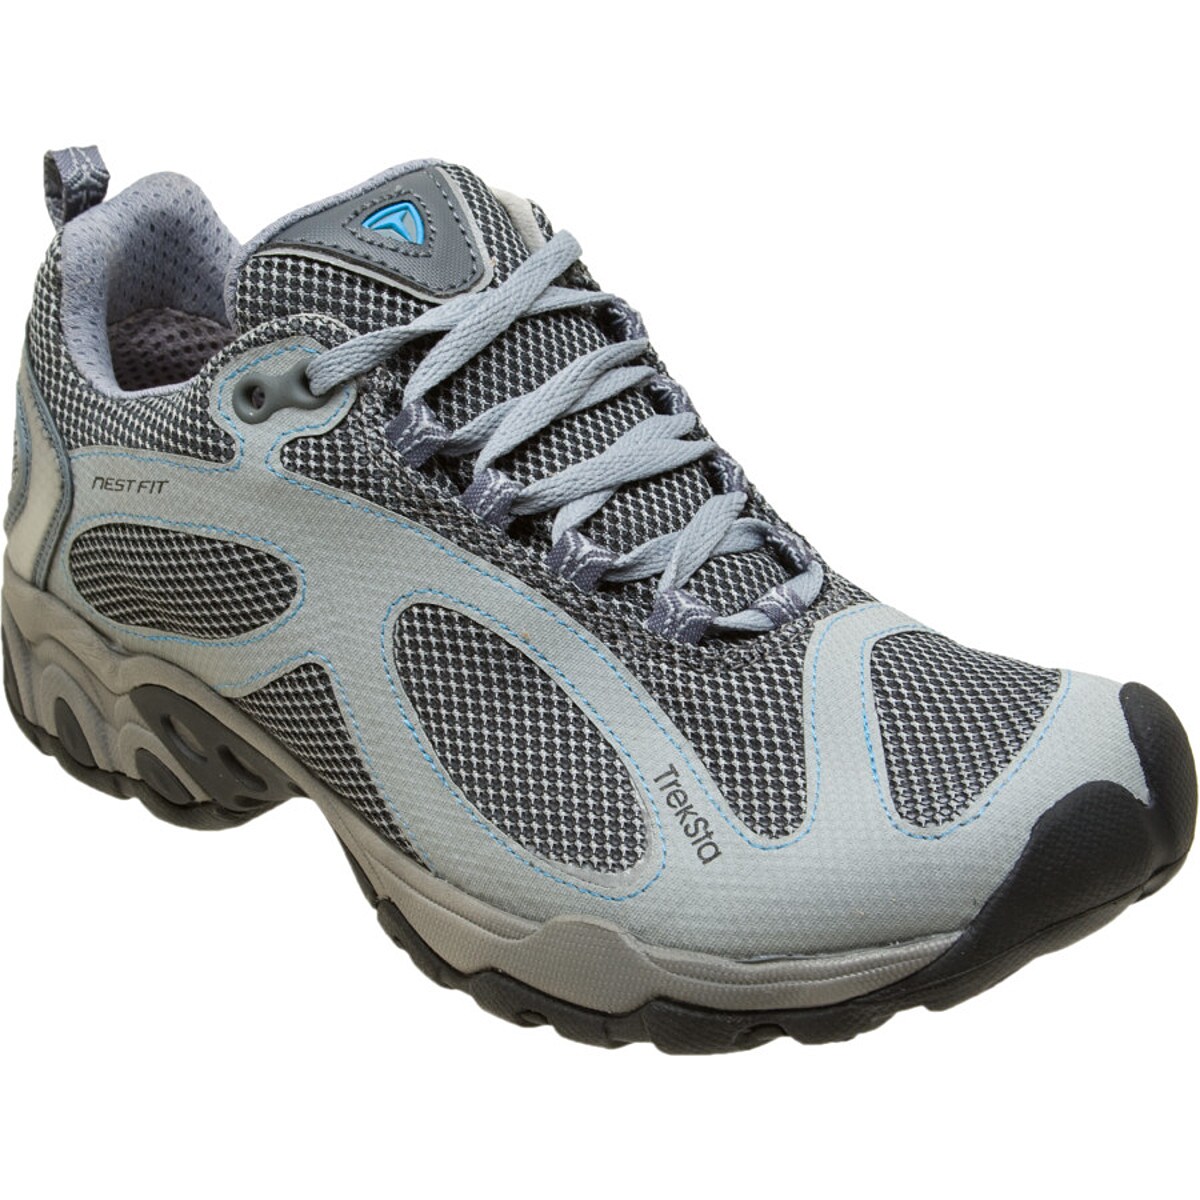 Evolution II Trail Running Shoe - Women's - Footwear